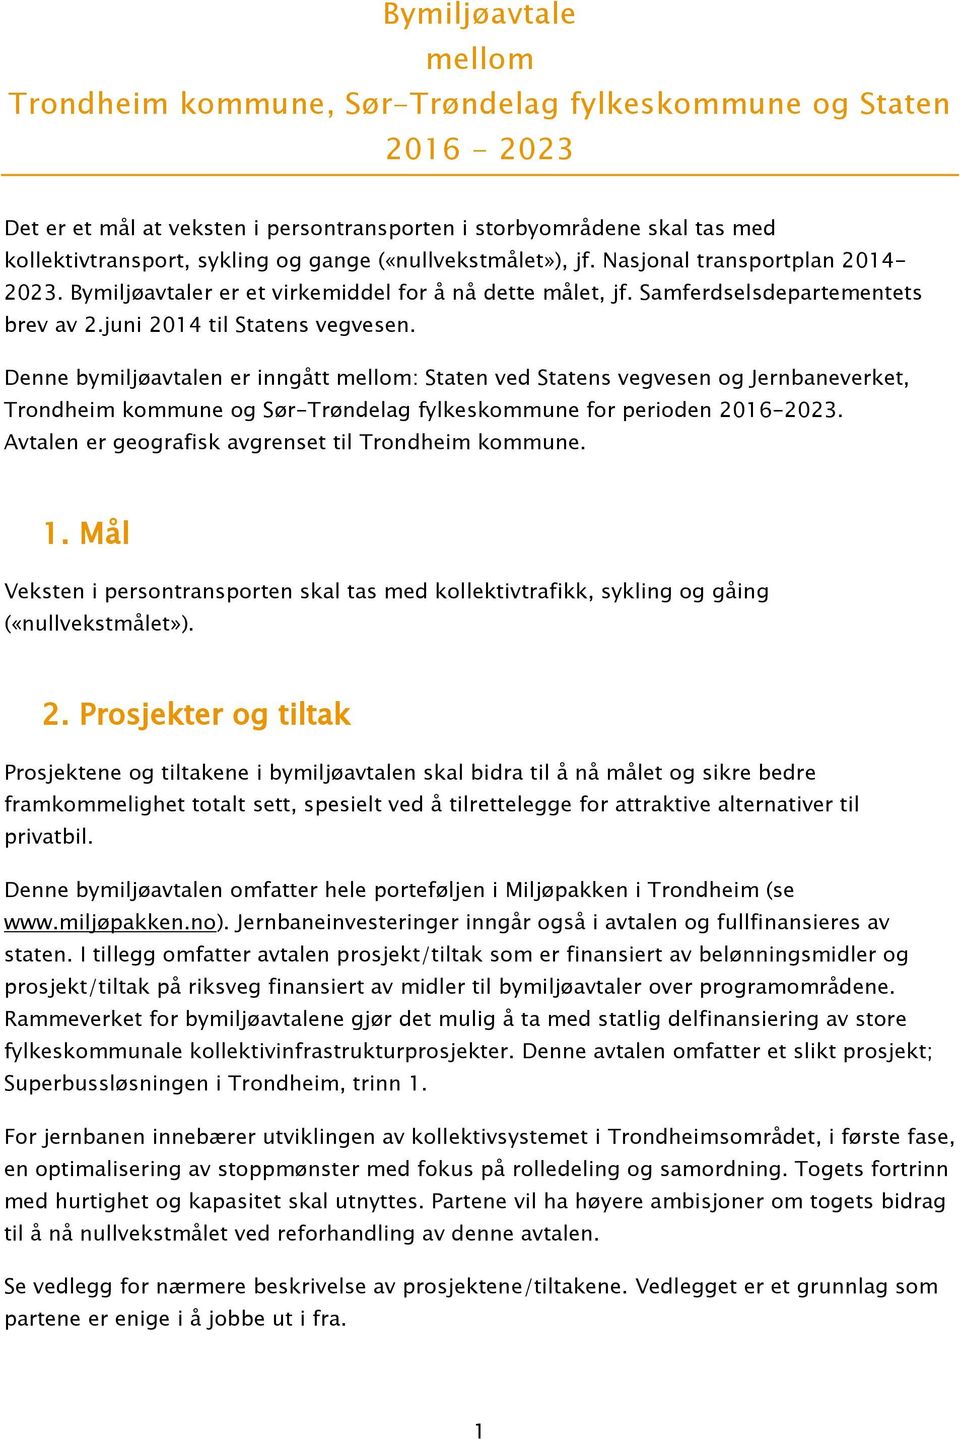 Denne bymiljøavtalen er inngått mellom: Staten ved Statens vegvesen og Jernbaneverket, Trondheim kommune og Sør-Trøndelag fylkeskommune for perioden 2016-2023.